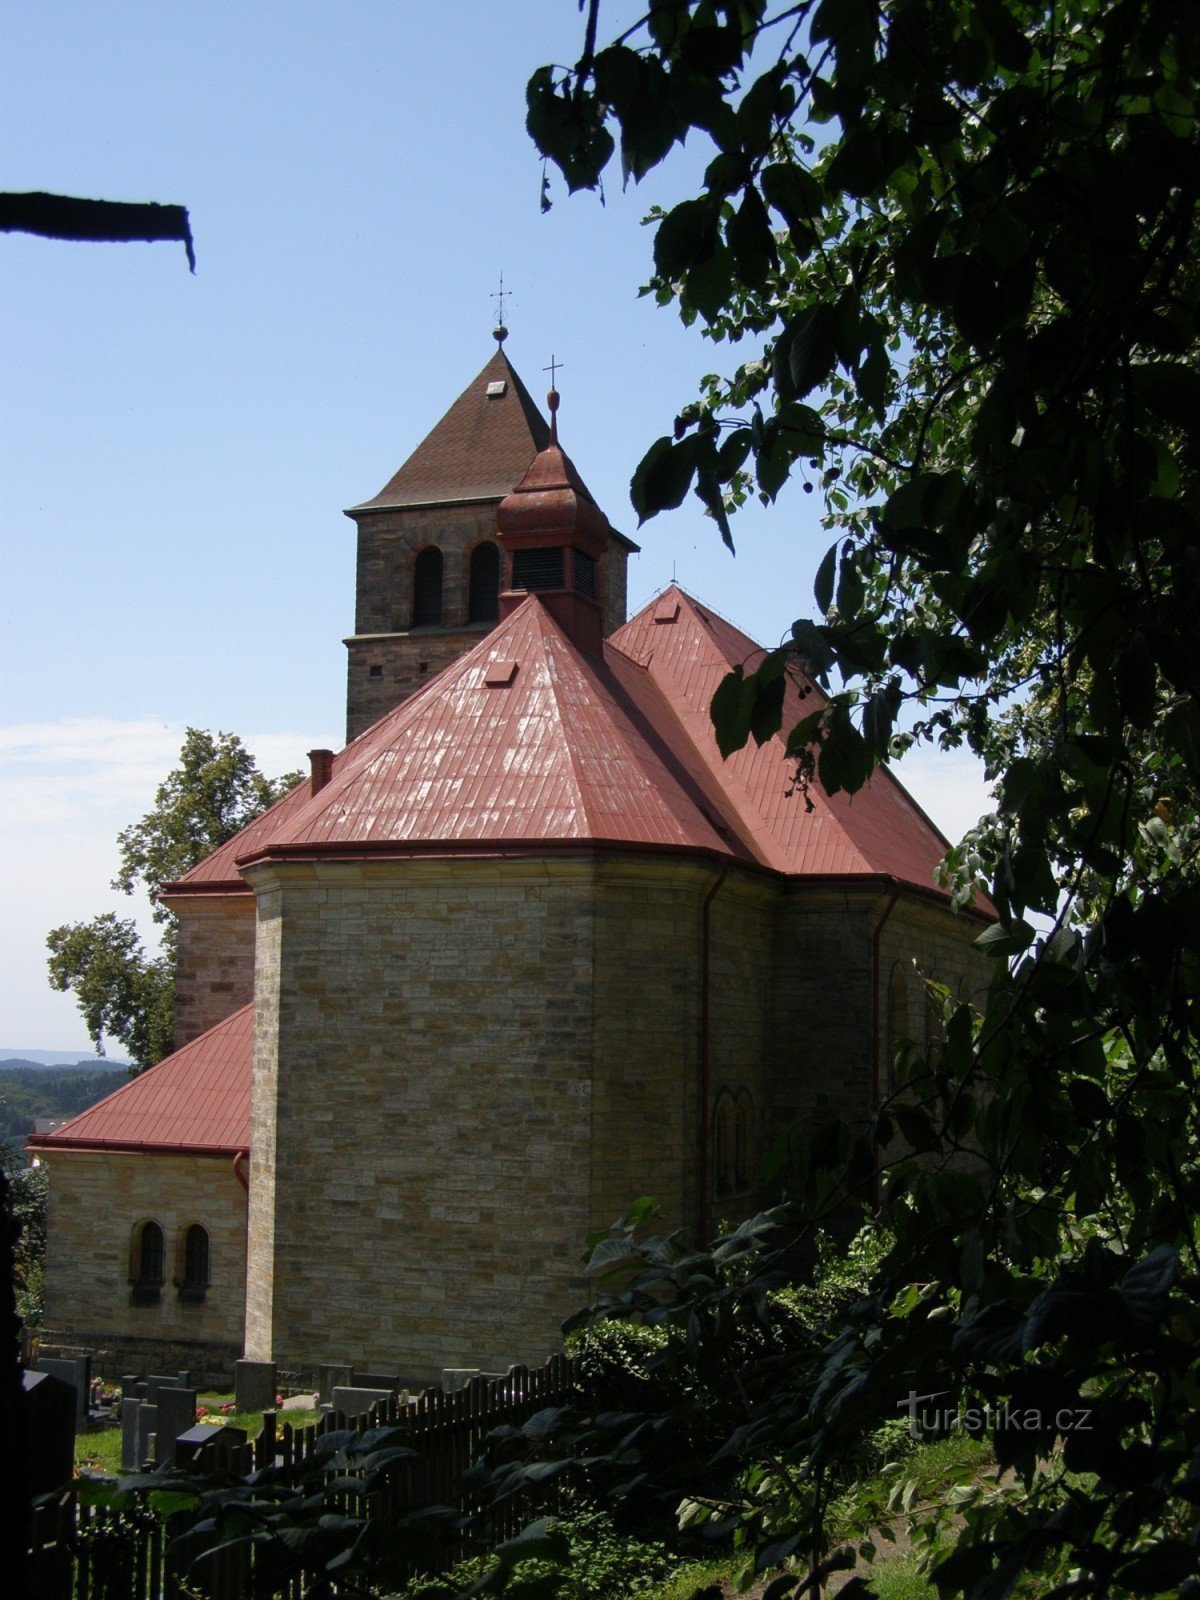 Vyskeř - Biserica Adormirea Maicii Domnului cu o clopotniță de lemn